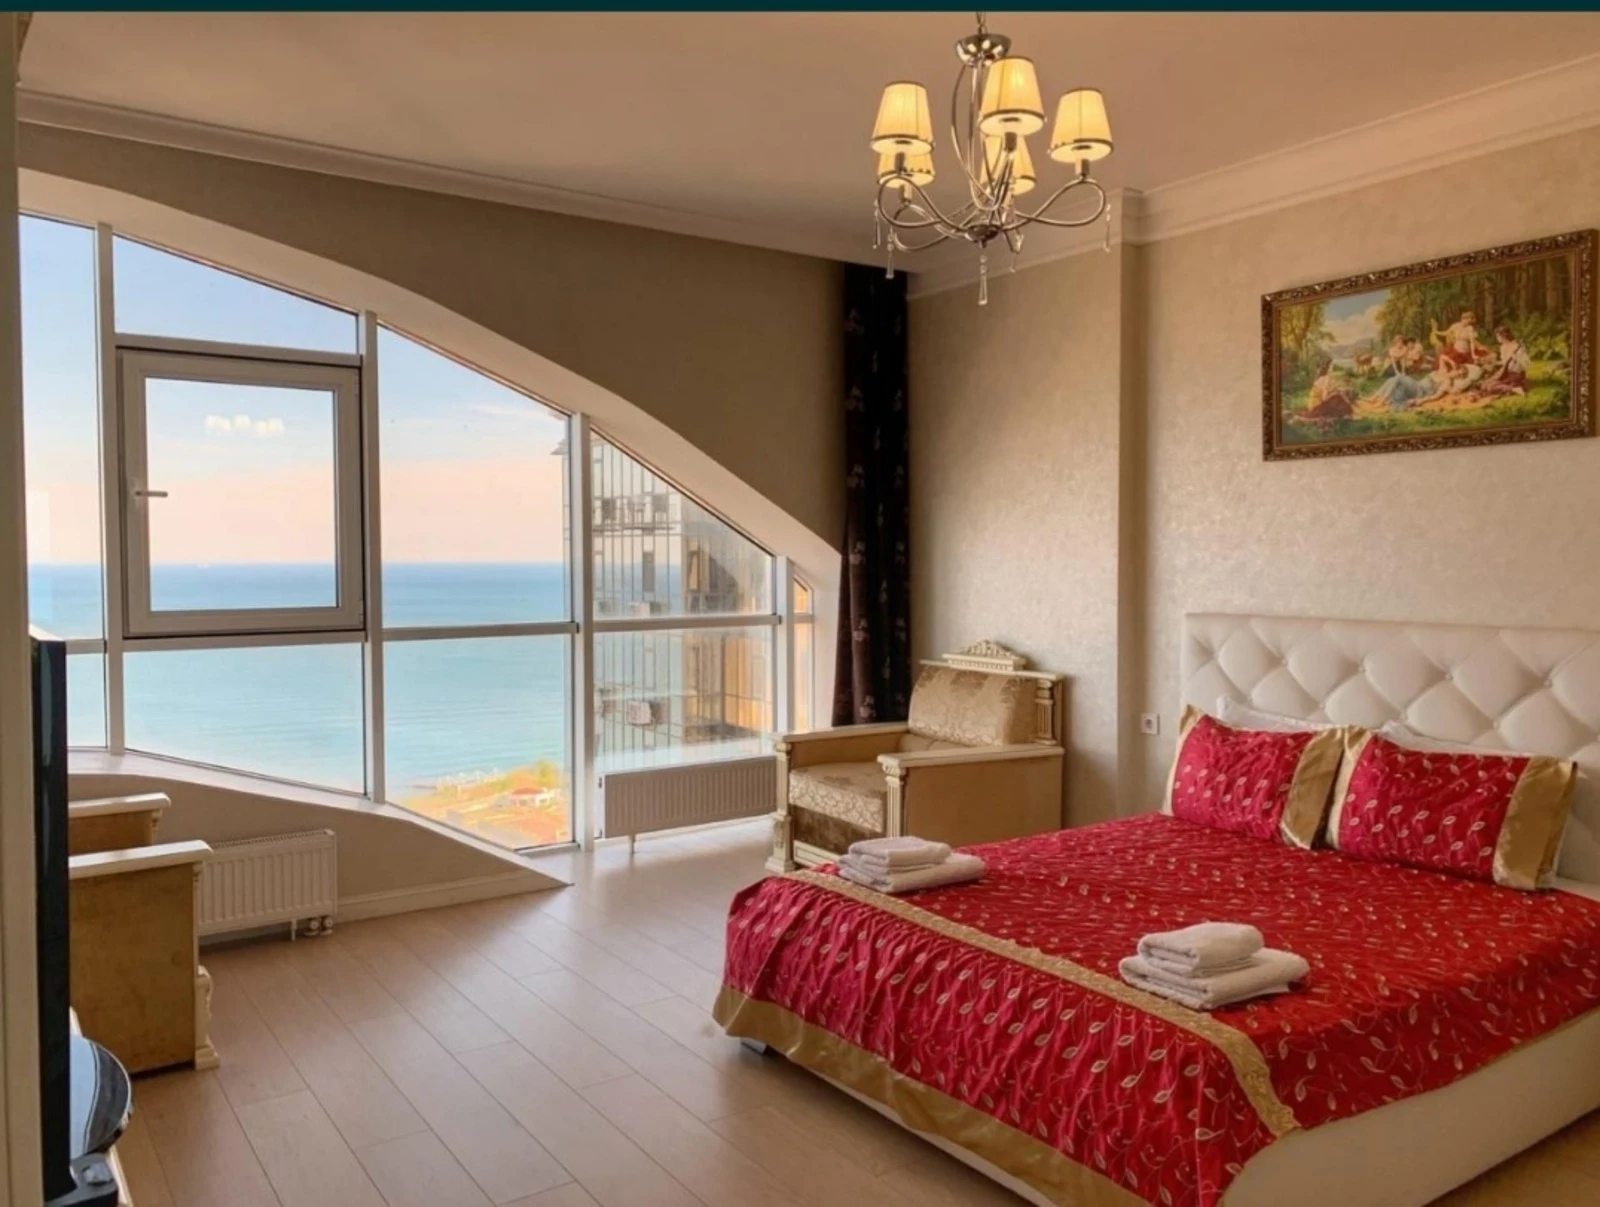 Аренда однокомнатной квартиры с панорамным видом на море в ЖК 7 Жемчужина.